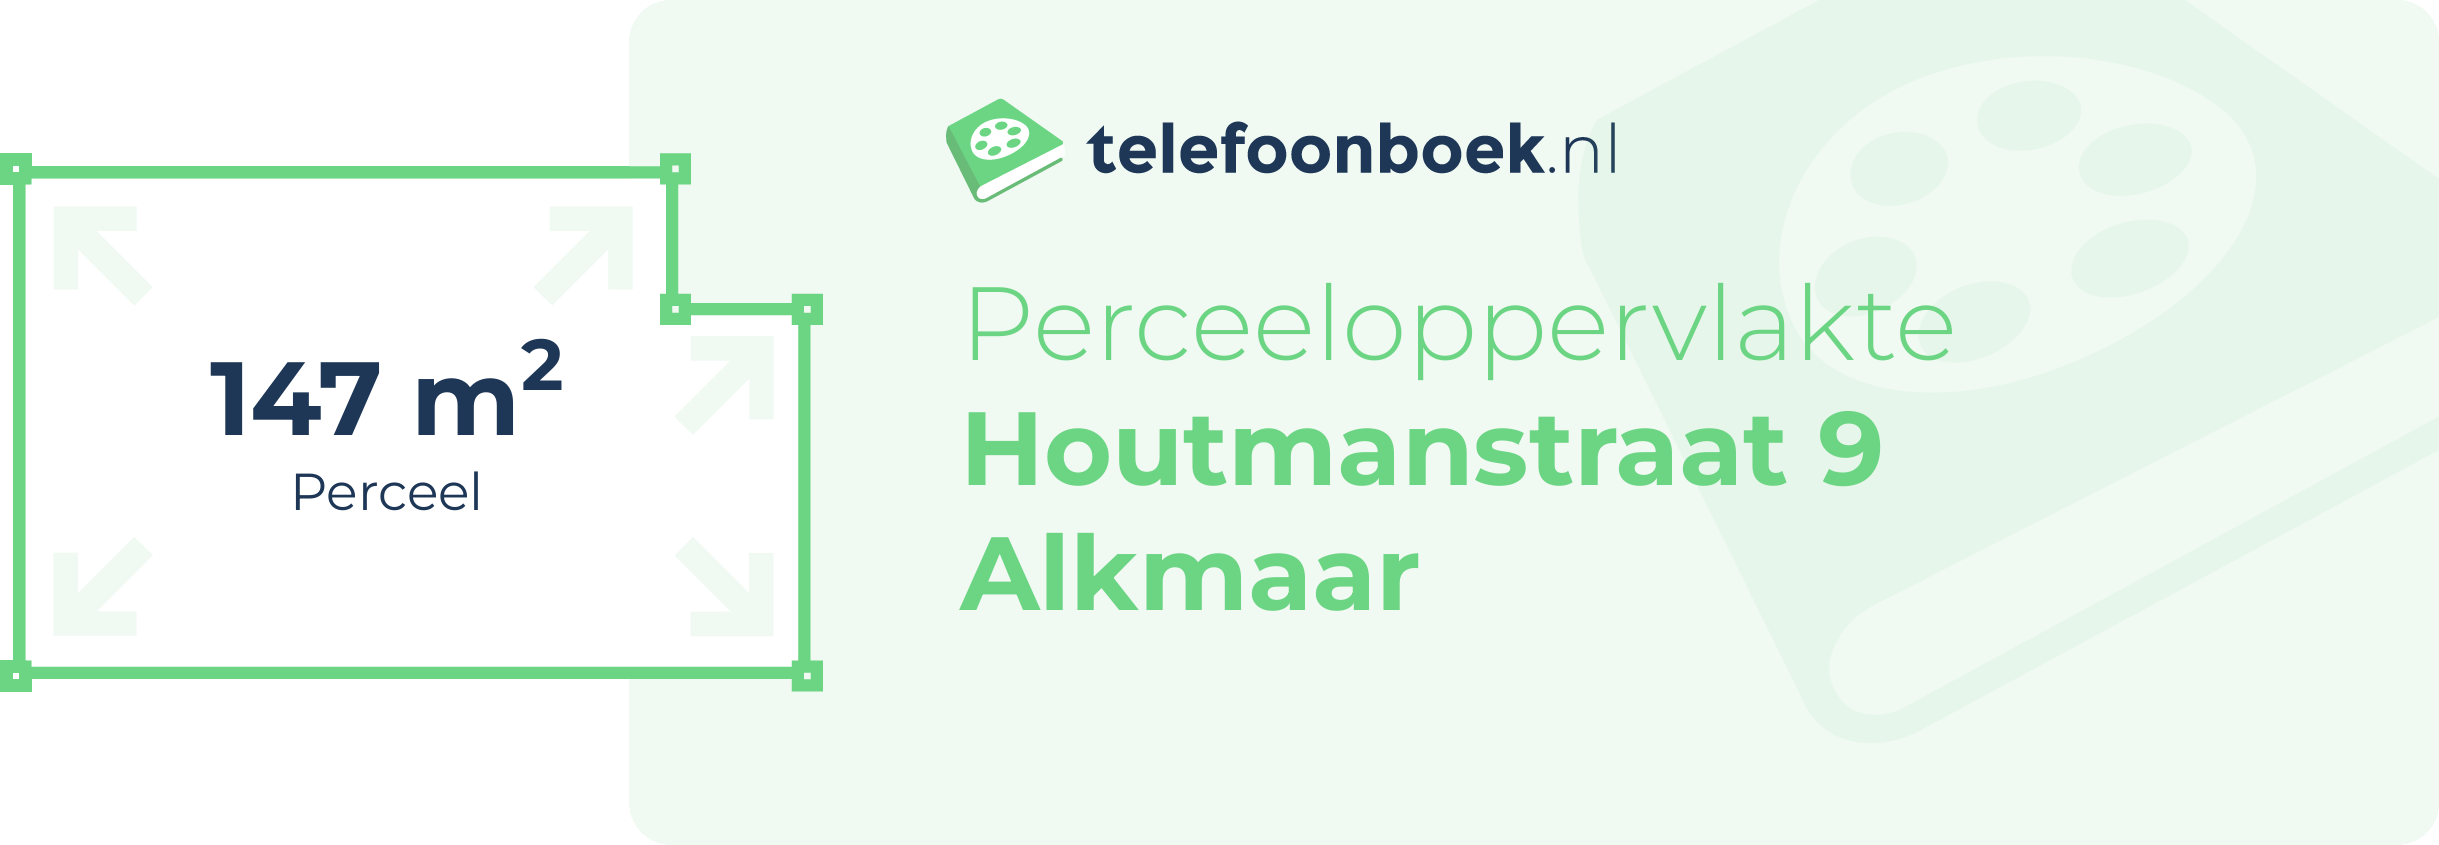 Perceeloppervlakte Houtmanstraat 9 Alkmaar